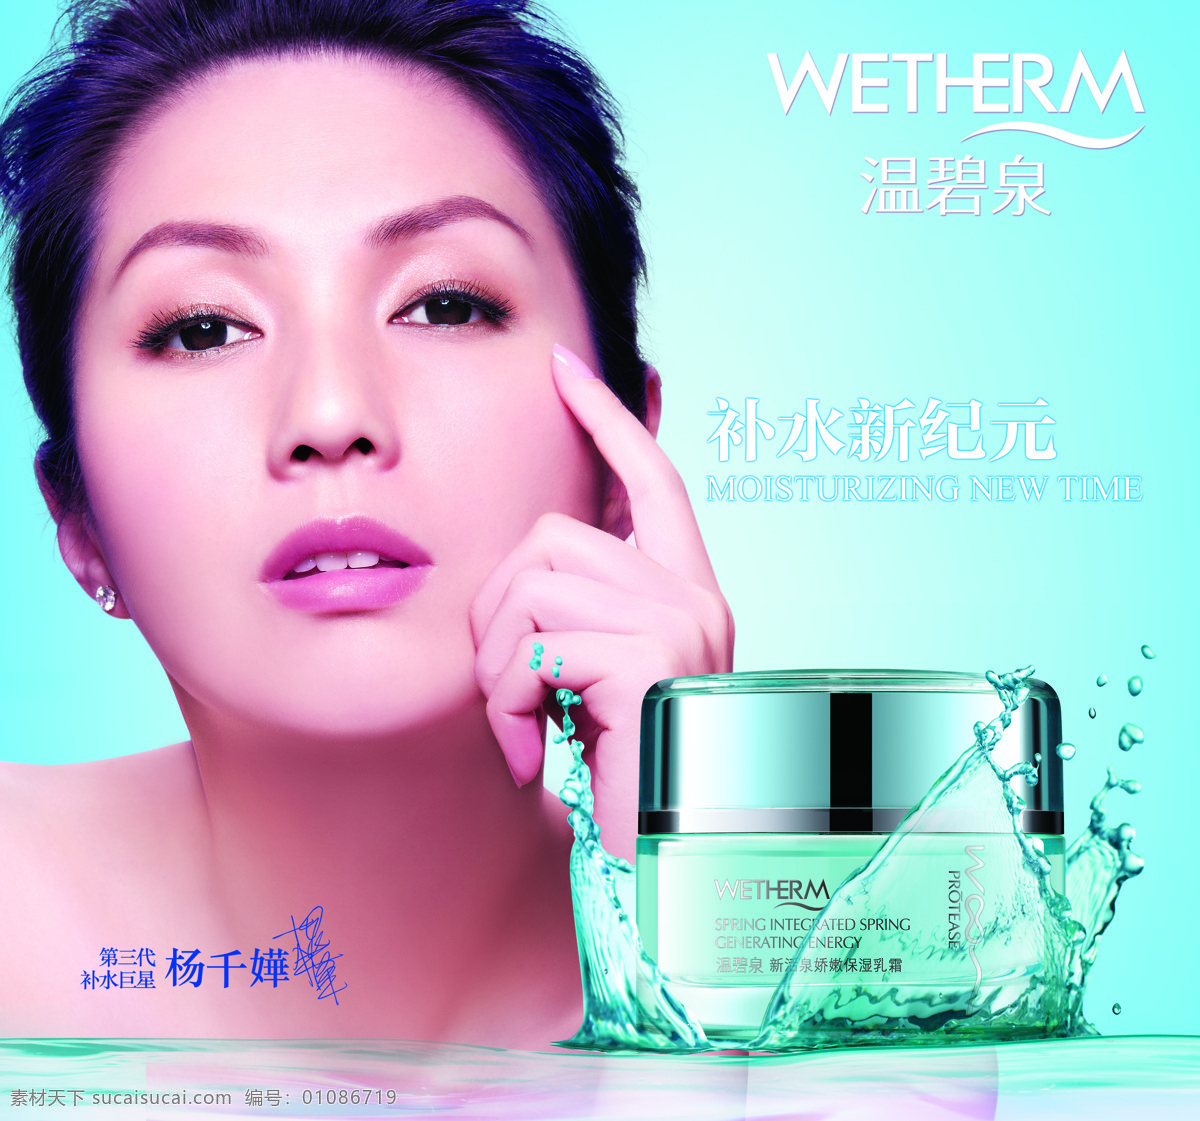 温碧泉 化妆品广告 明星代言 杨千华 温碧泉标志 保湿乳霜 水浪